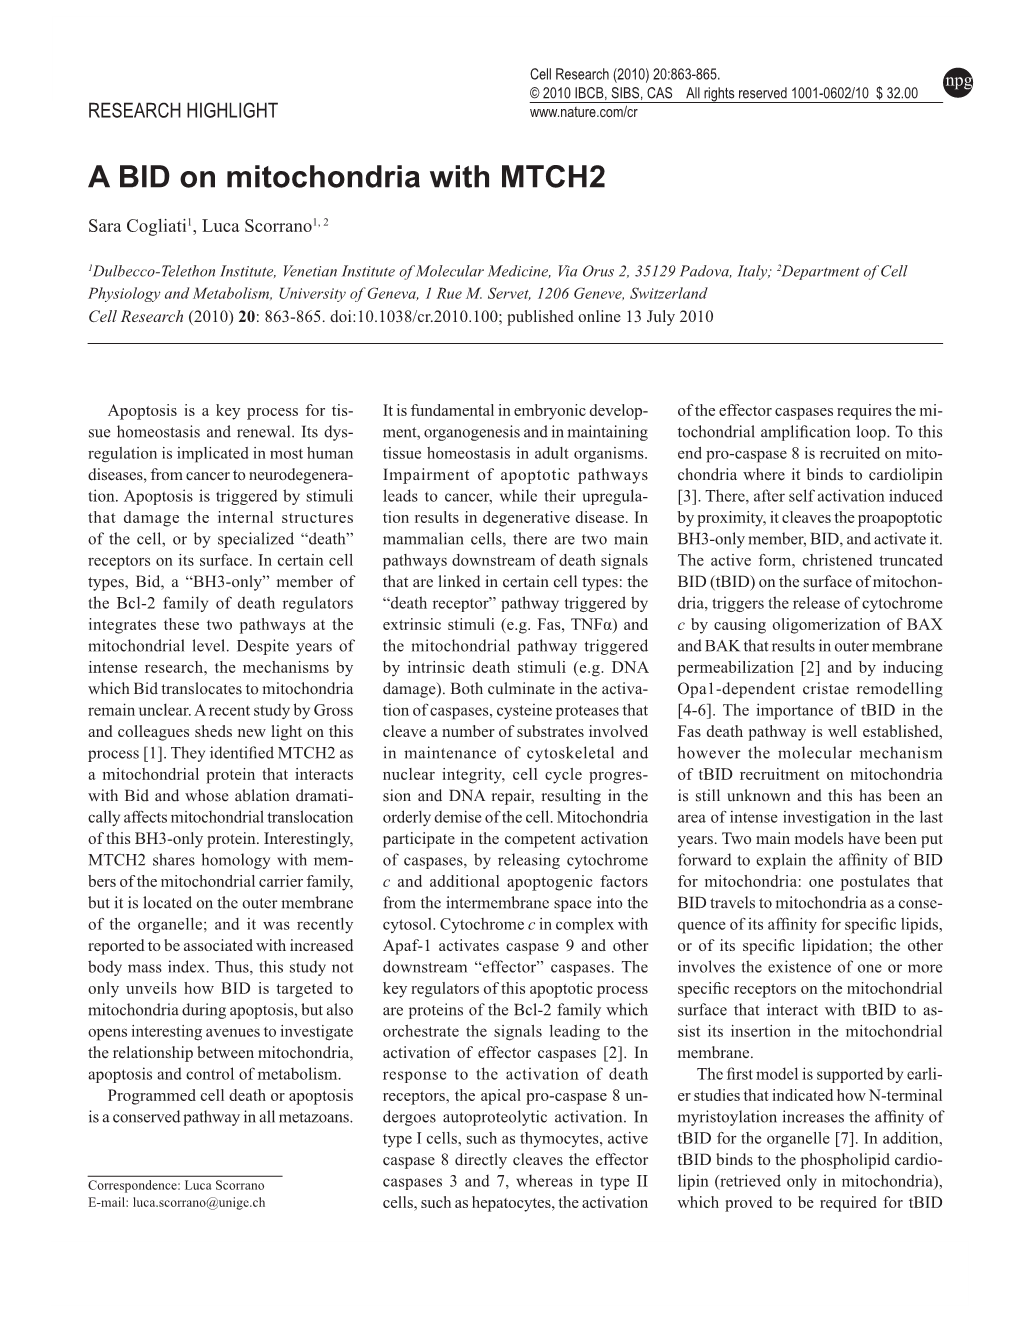 A BID on Mitochondria with MTCH2